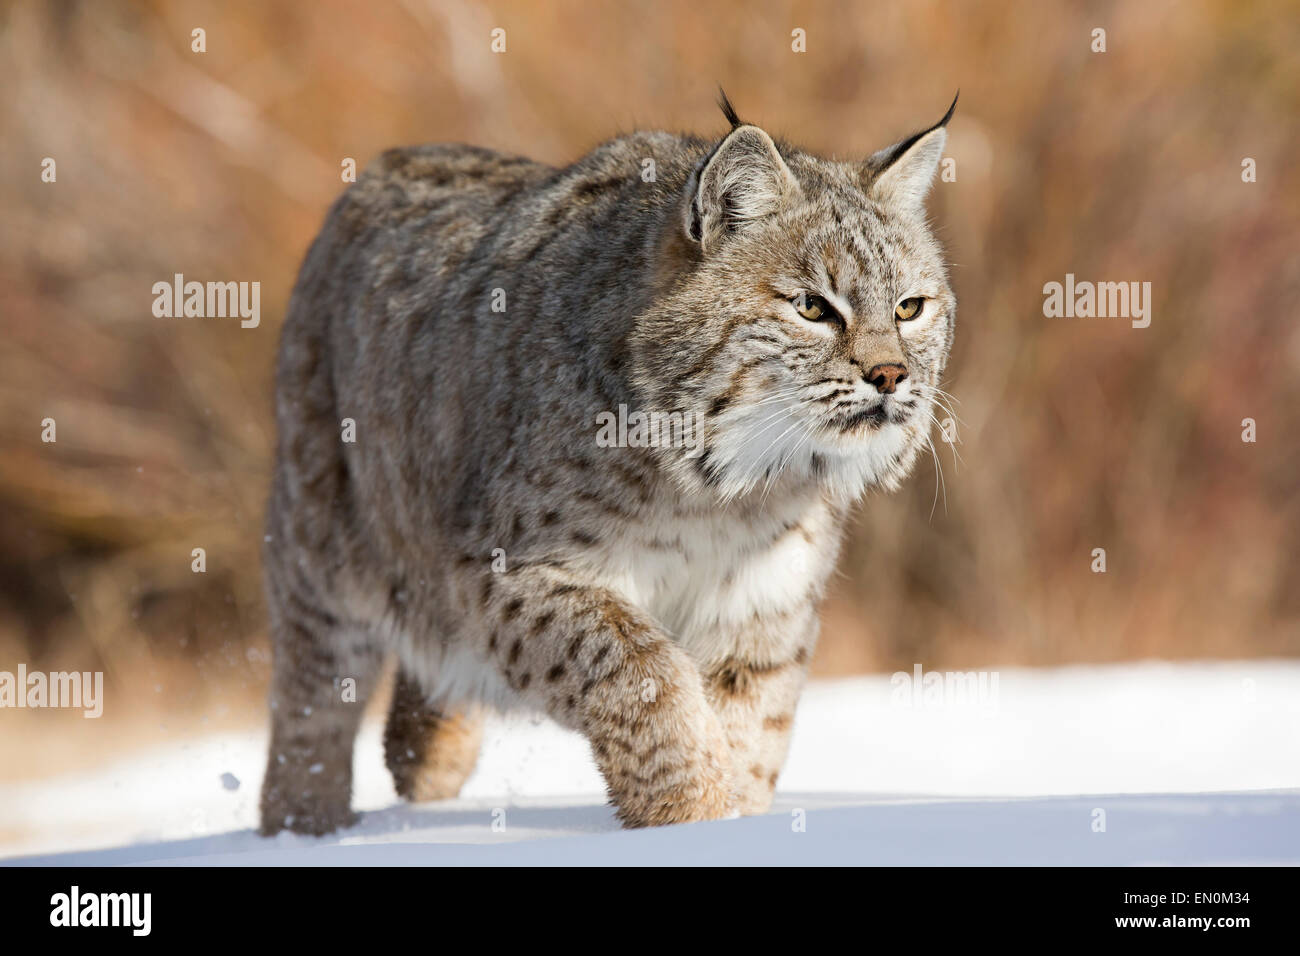 Bobcat (Felis rufus) passeggiate attraverso la neve alla ricerca di cibo Foto Stock